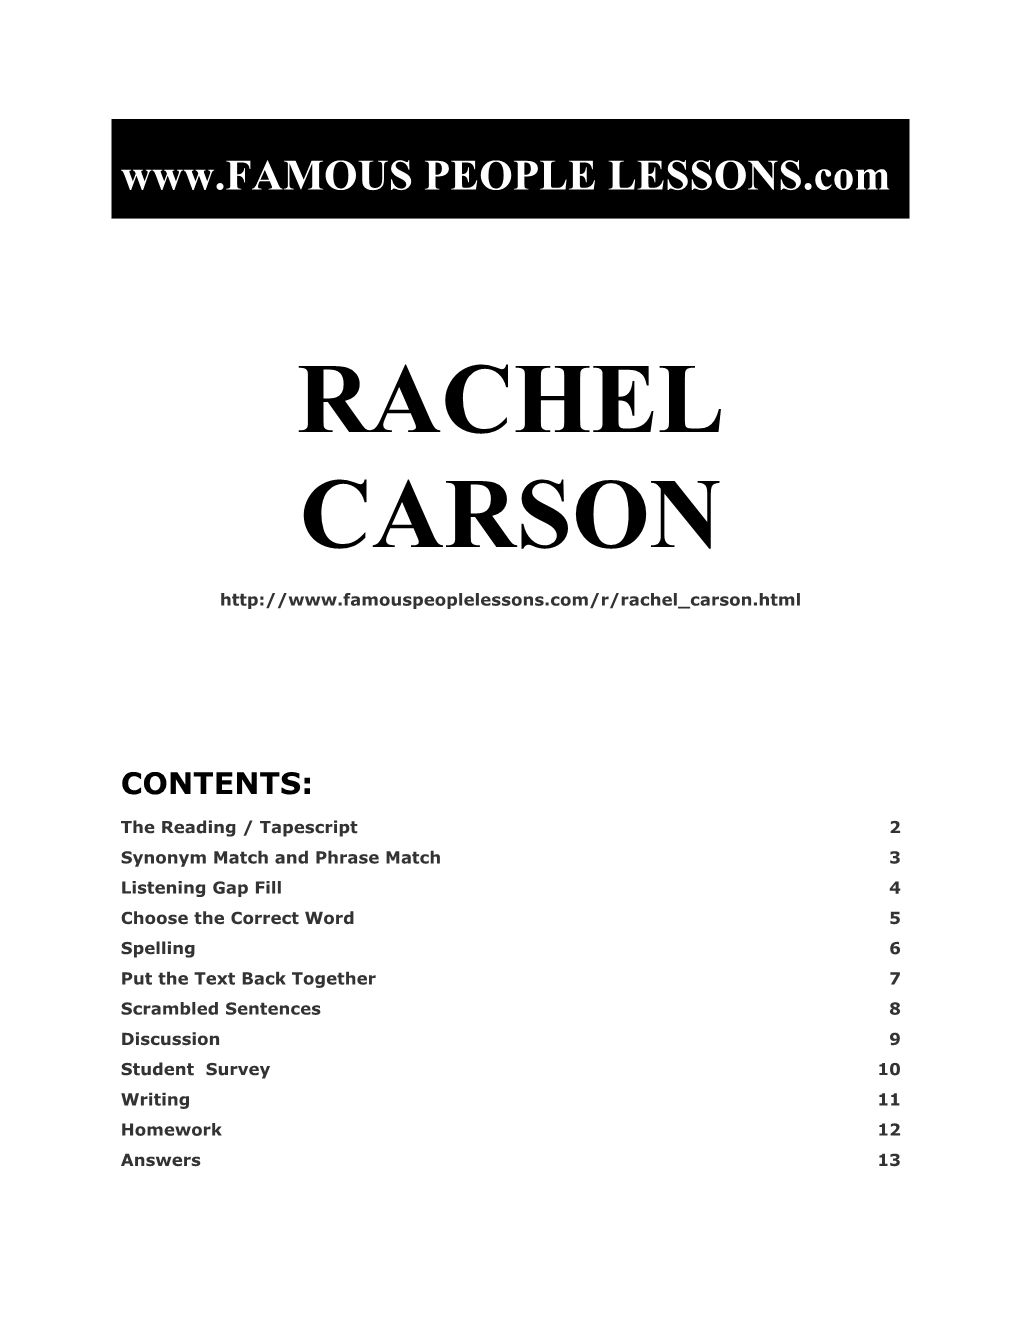 Famous People Lessons - Rachel Carson